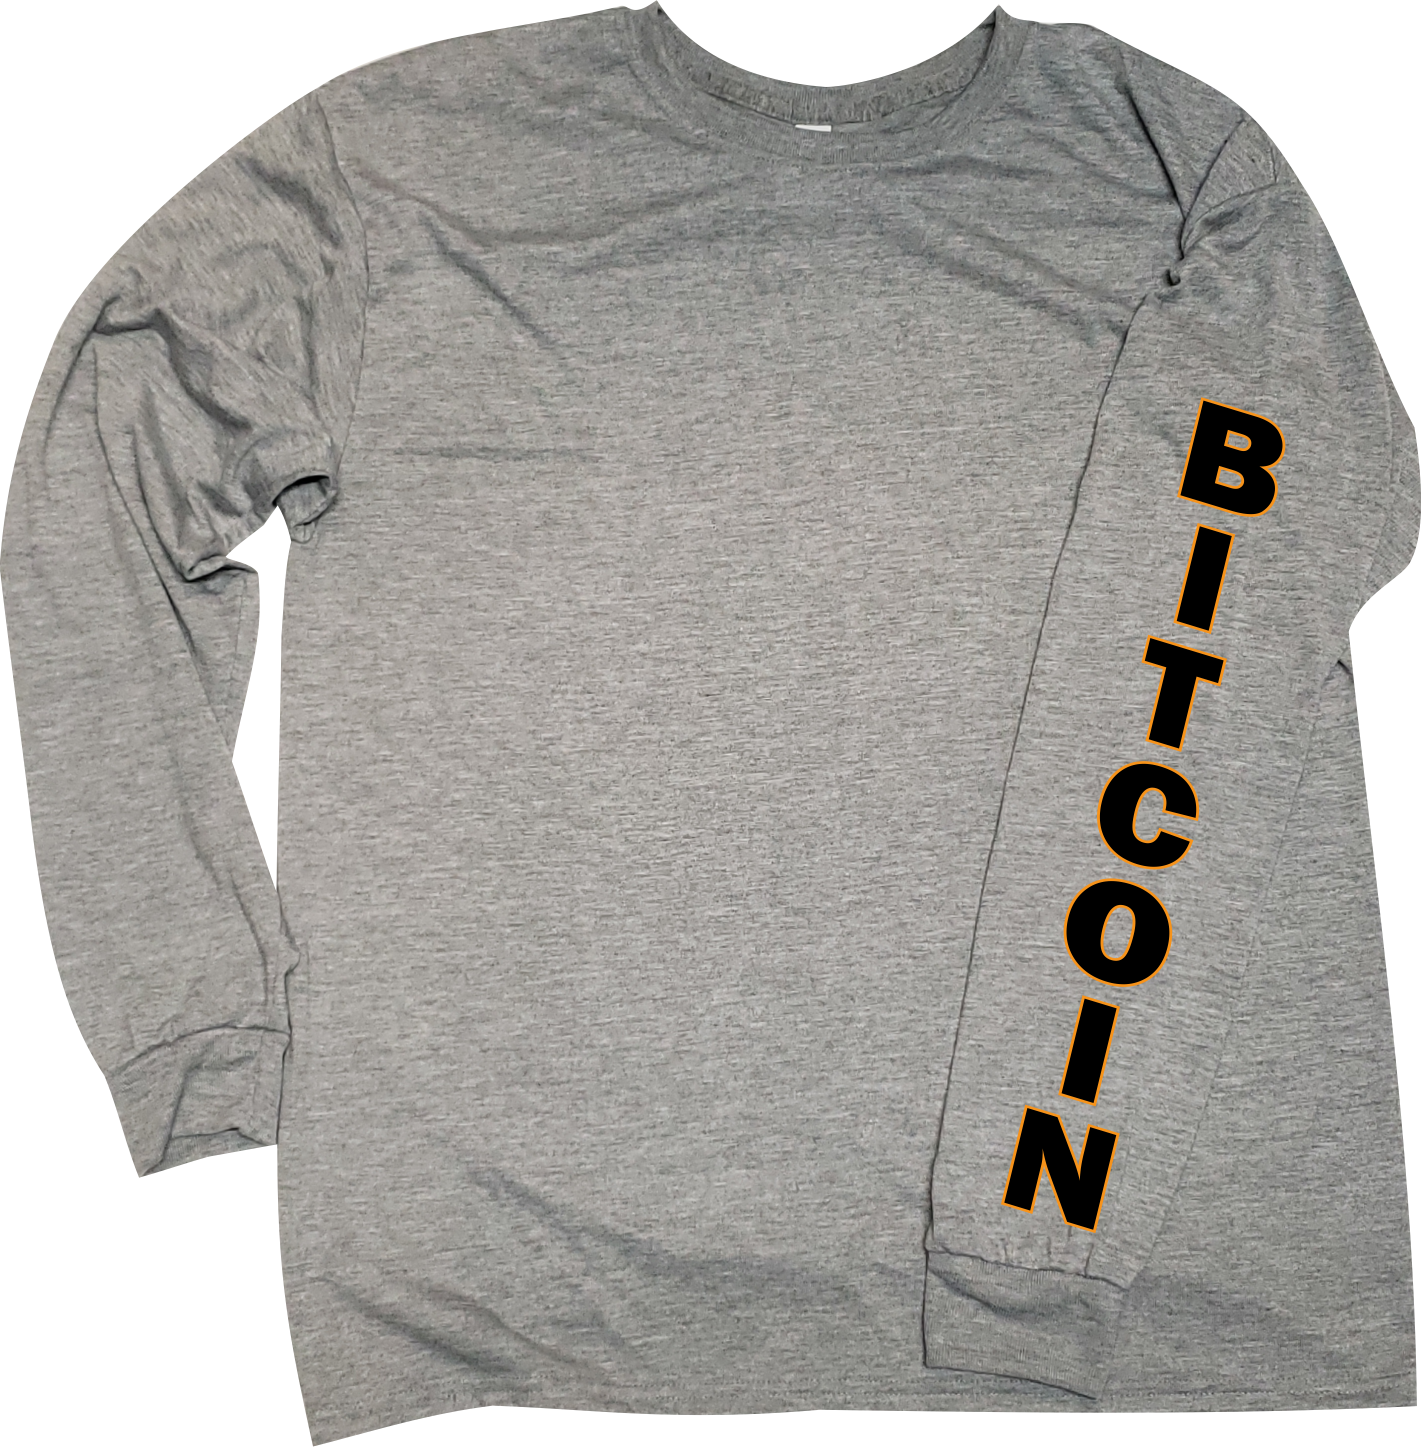 BadAss Bitcoin tshirt